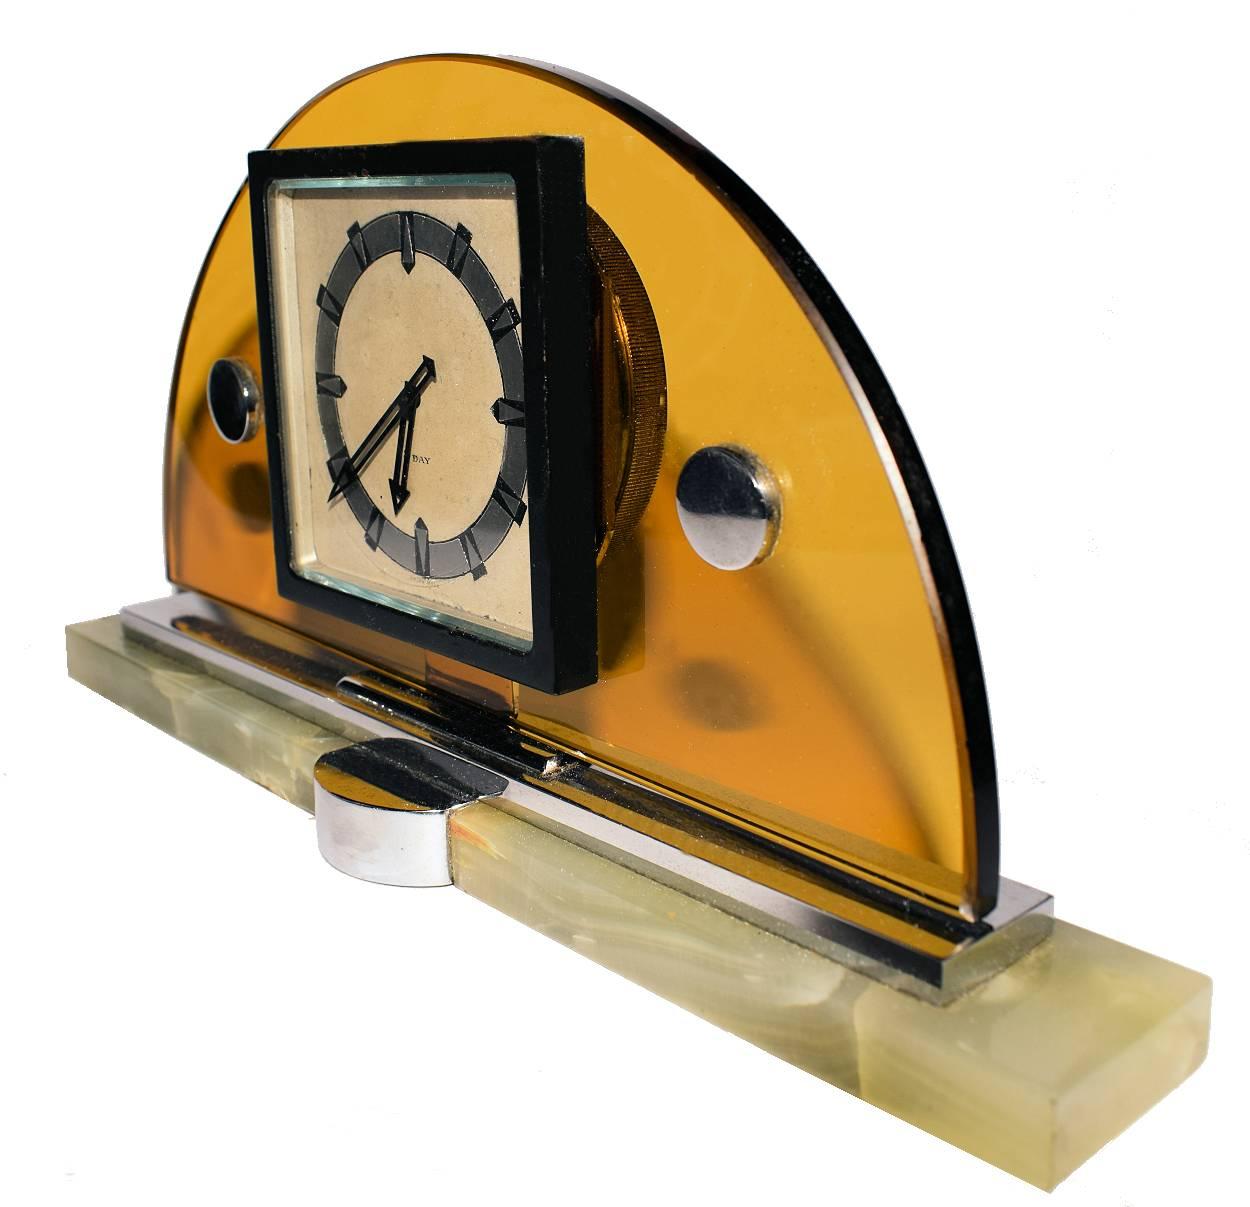 Pour votre considération, voici un bel exemple d'une horloge de cheminée moderniste Art Déco Suisse 8 jours - Swiss Made. Il présente un épais croissant de verre jaune qui repose sur une base en chrome et en onyx. Le cadran de l'horloge affiche des